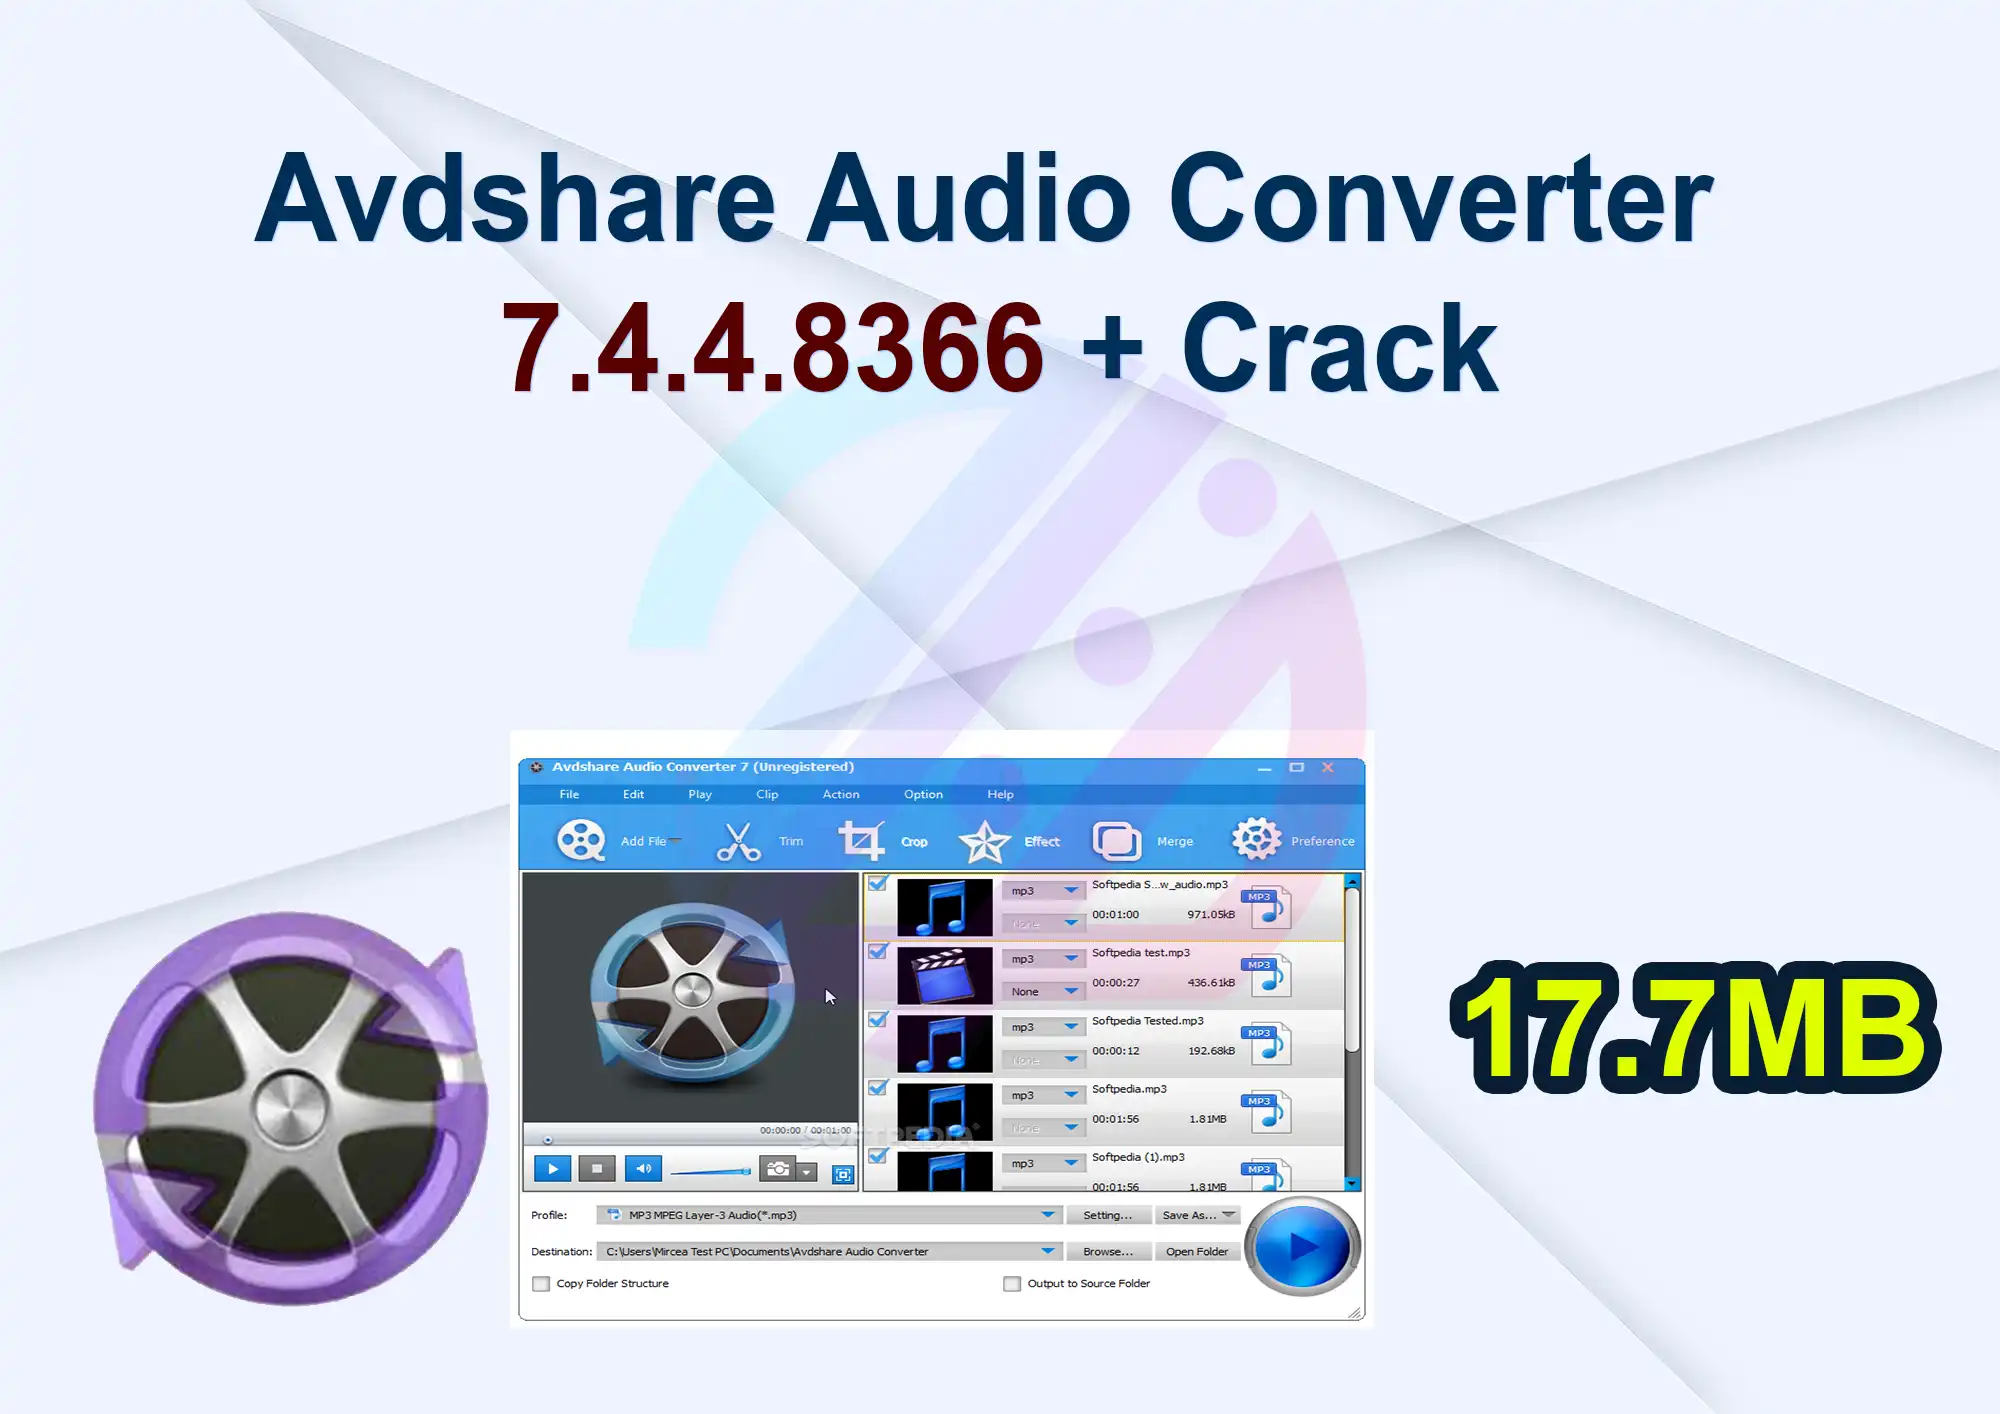 Avdshare Audio Converter 7.4.4.8366 + Crack